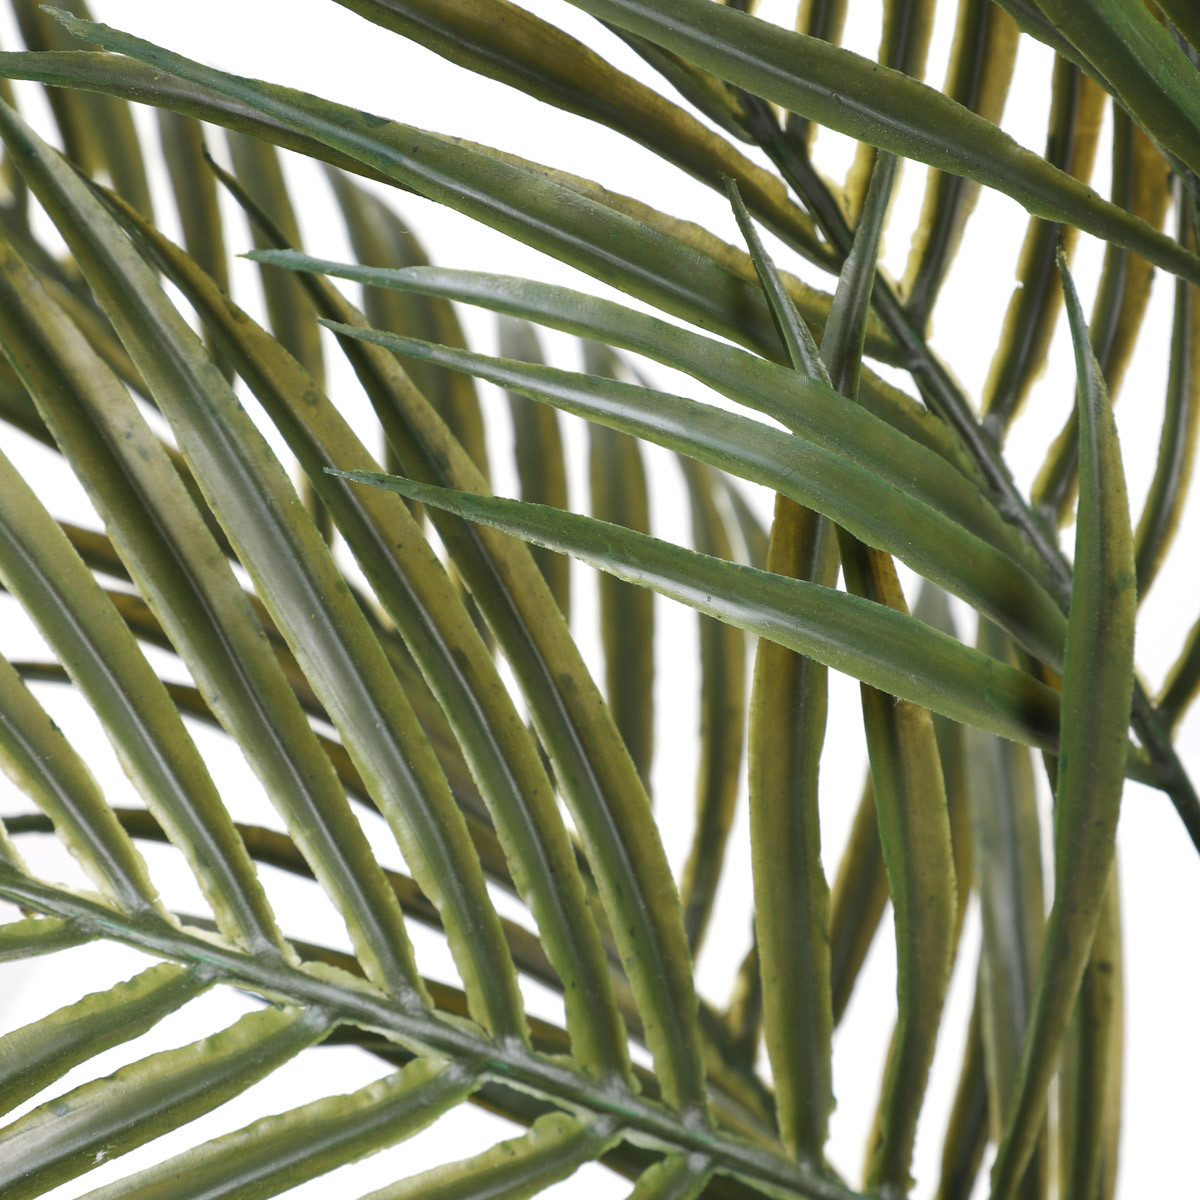 Umelá rastlina SEMELA palma 875064 56 cm